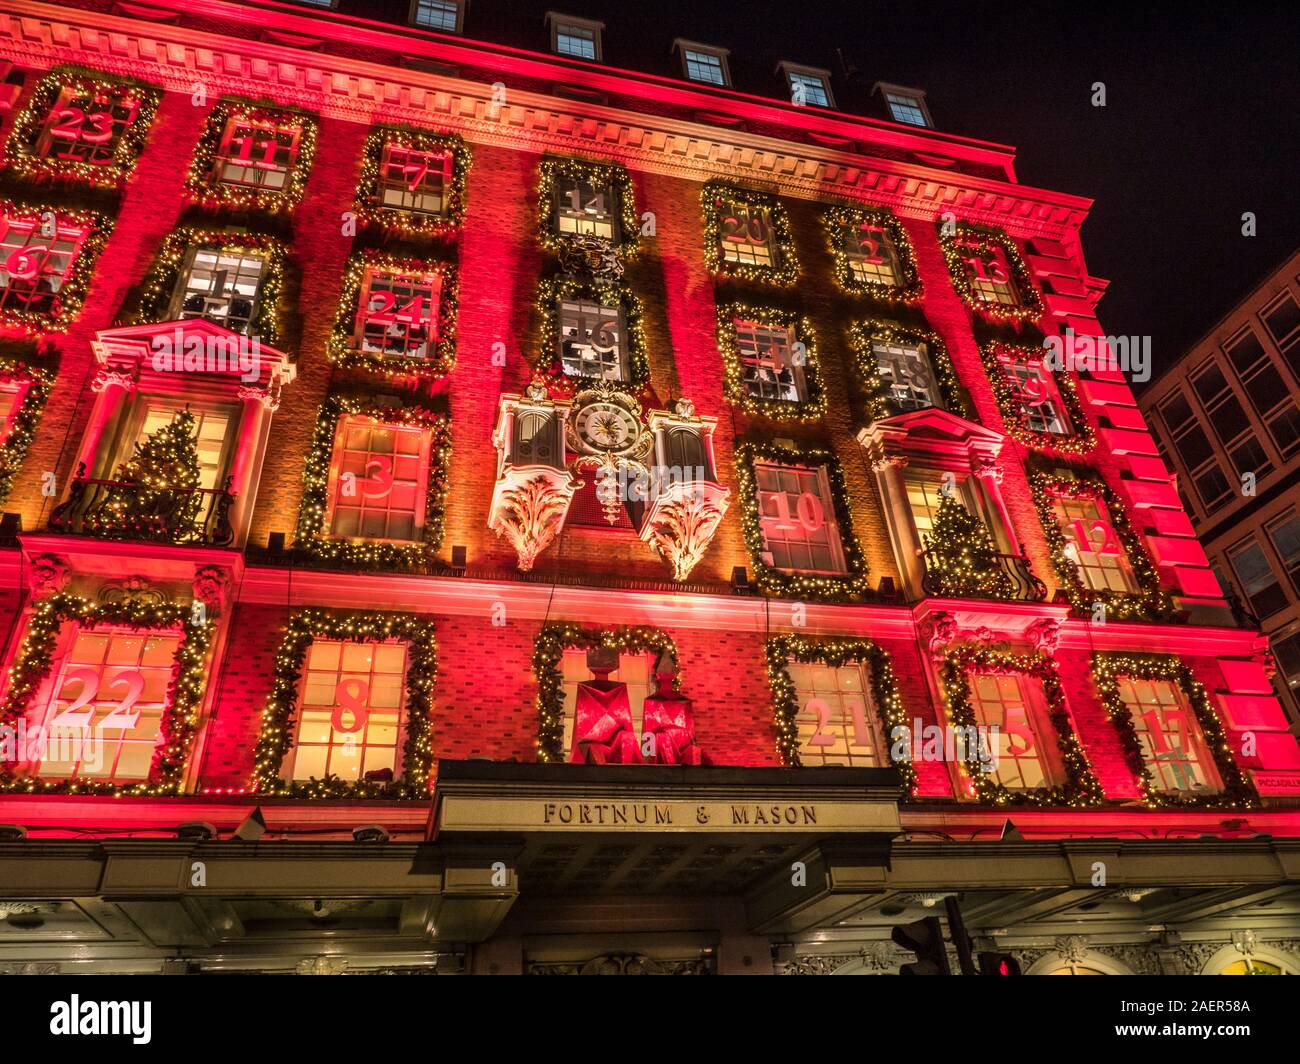 Navidad Fortnum & Mason department store fachada, con un calendario de Adviento tema rojo en la noche Piccadilly Londres Reino Unido 2019 Foto de stock